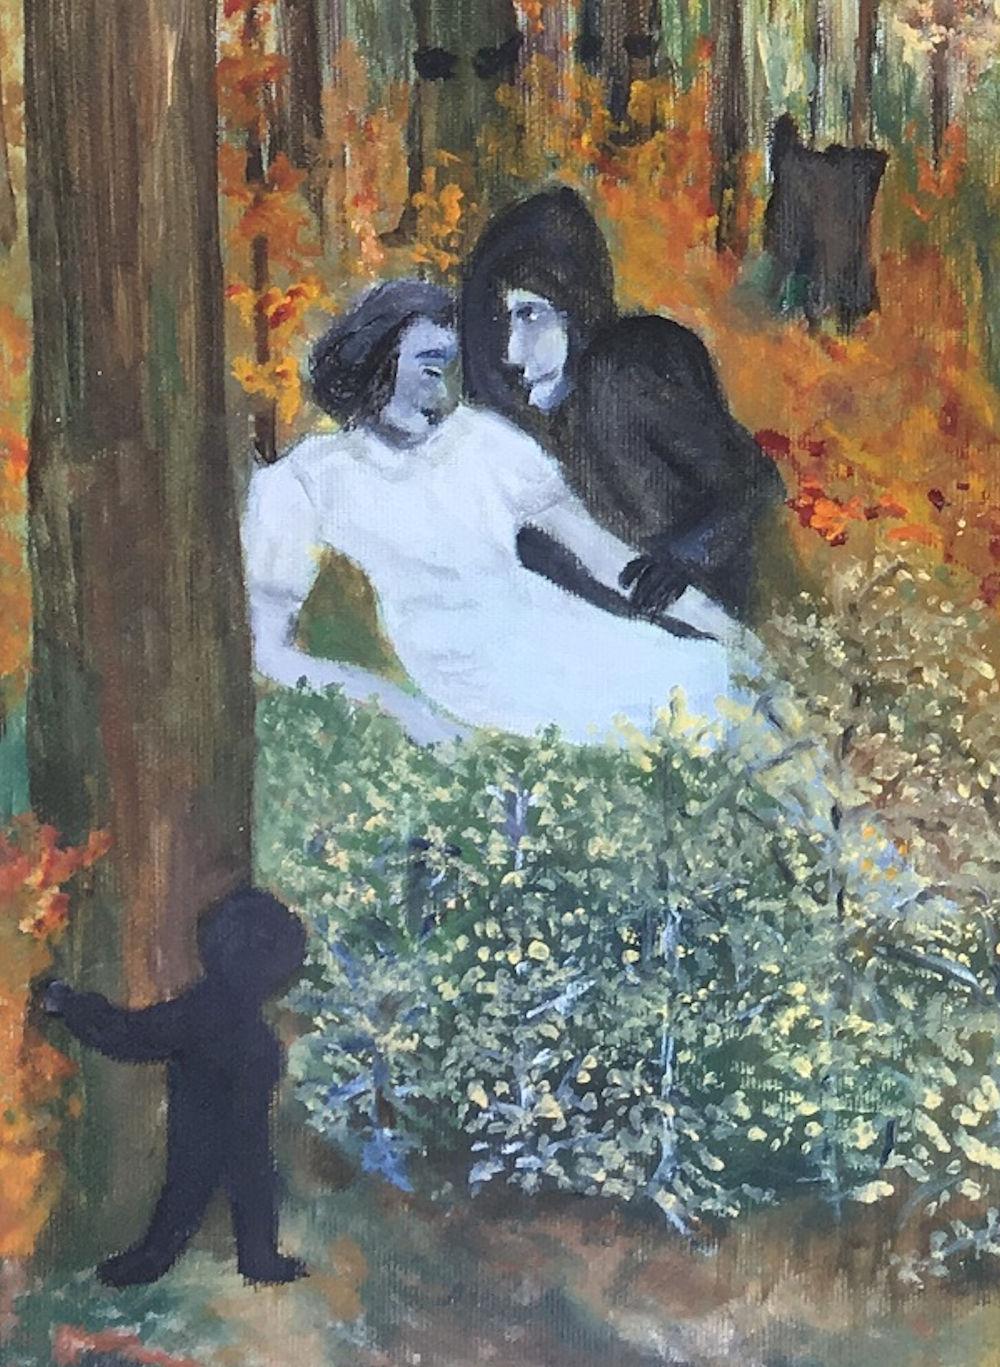 Gemälde der dänischen Malerin Bente Ørum 2017.

Ein Spaziergang im Wald ist schön. Sich hinzusetzen mag aufregend sein - aber nicht alles ist so friedlich, wie es sein könnte. 

Über den Künstler:
Die Gemälde von Bente Ørum sind figurativ, oft mit